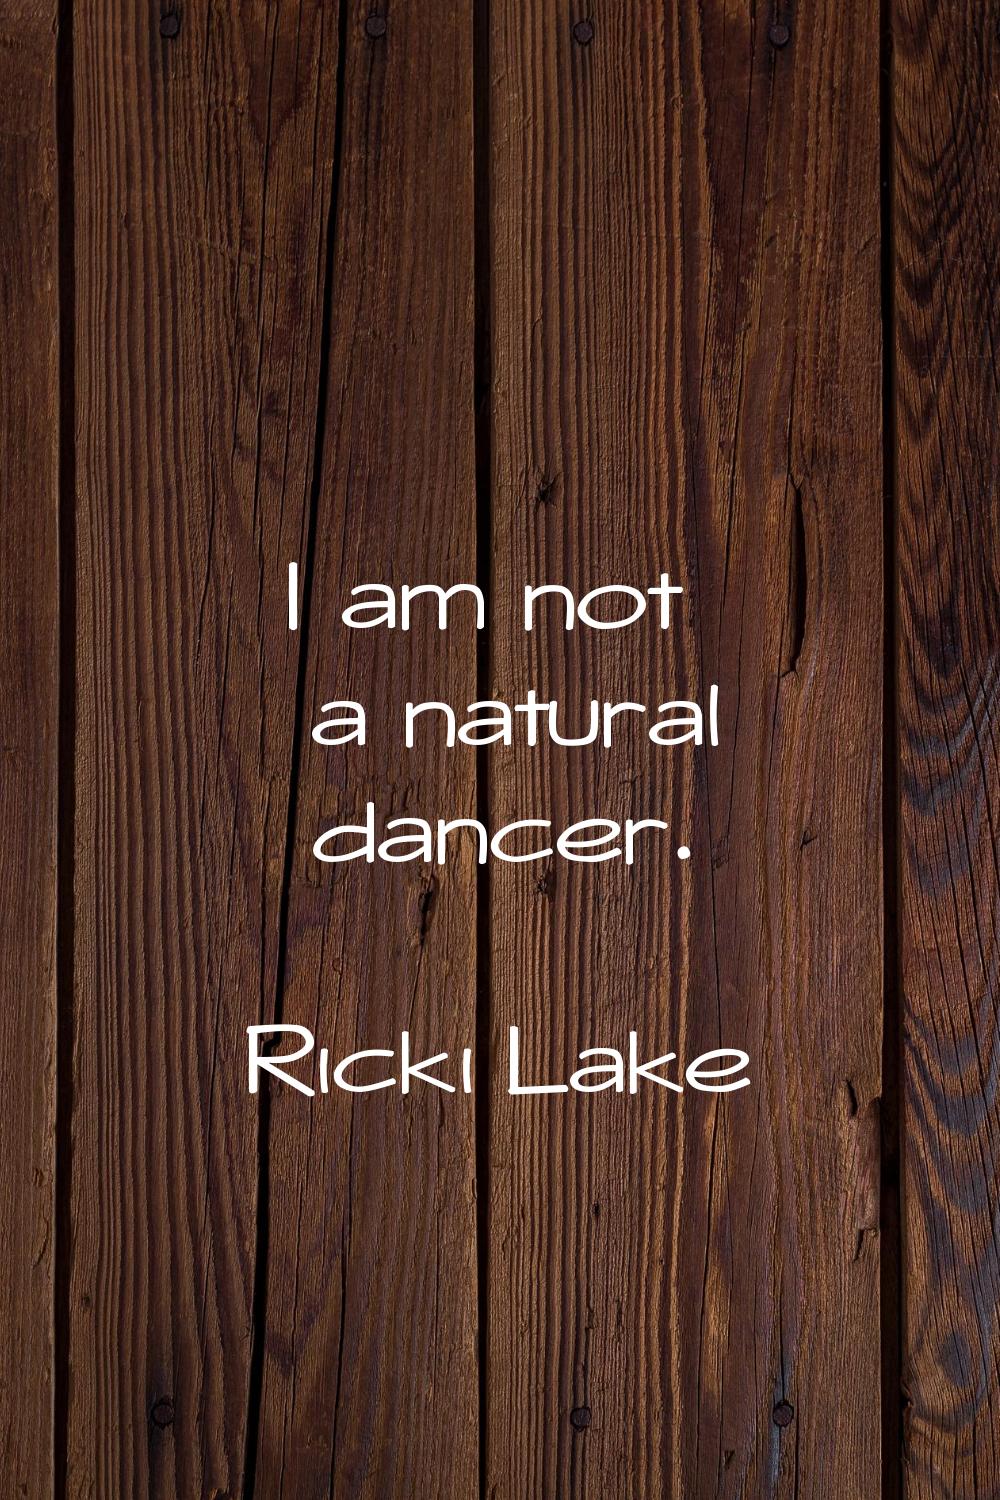 I am not a natural dancer.